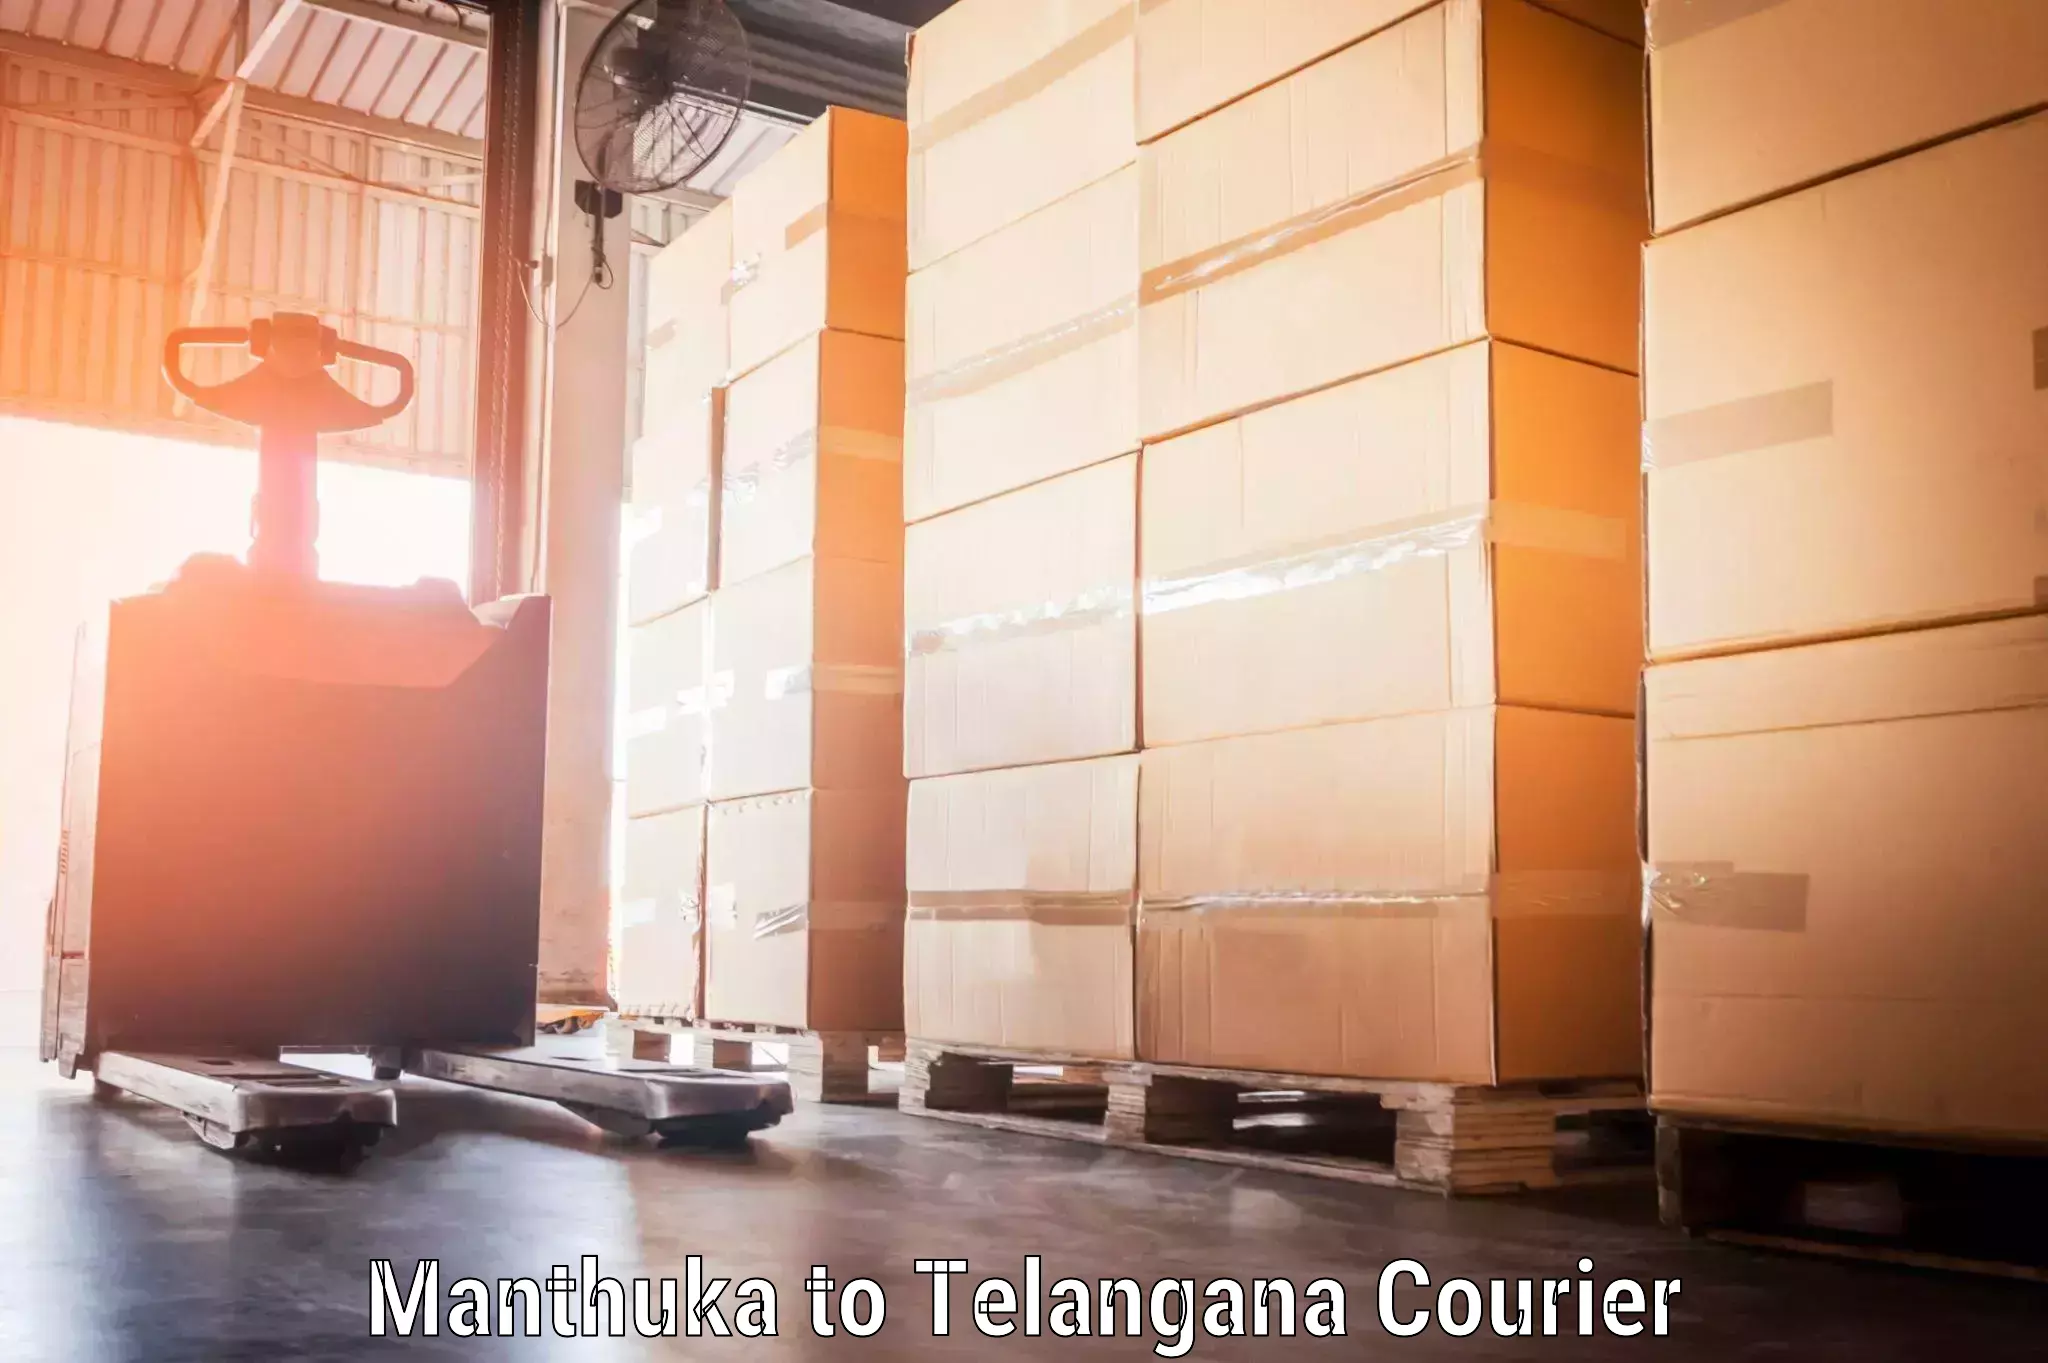 Baggage shipping service Manthuka to Kothakota